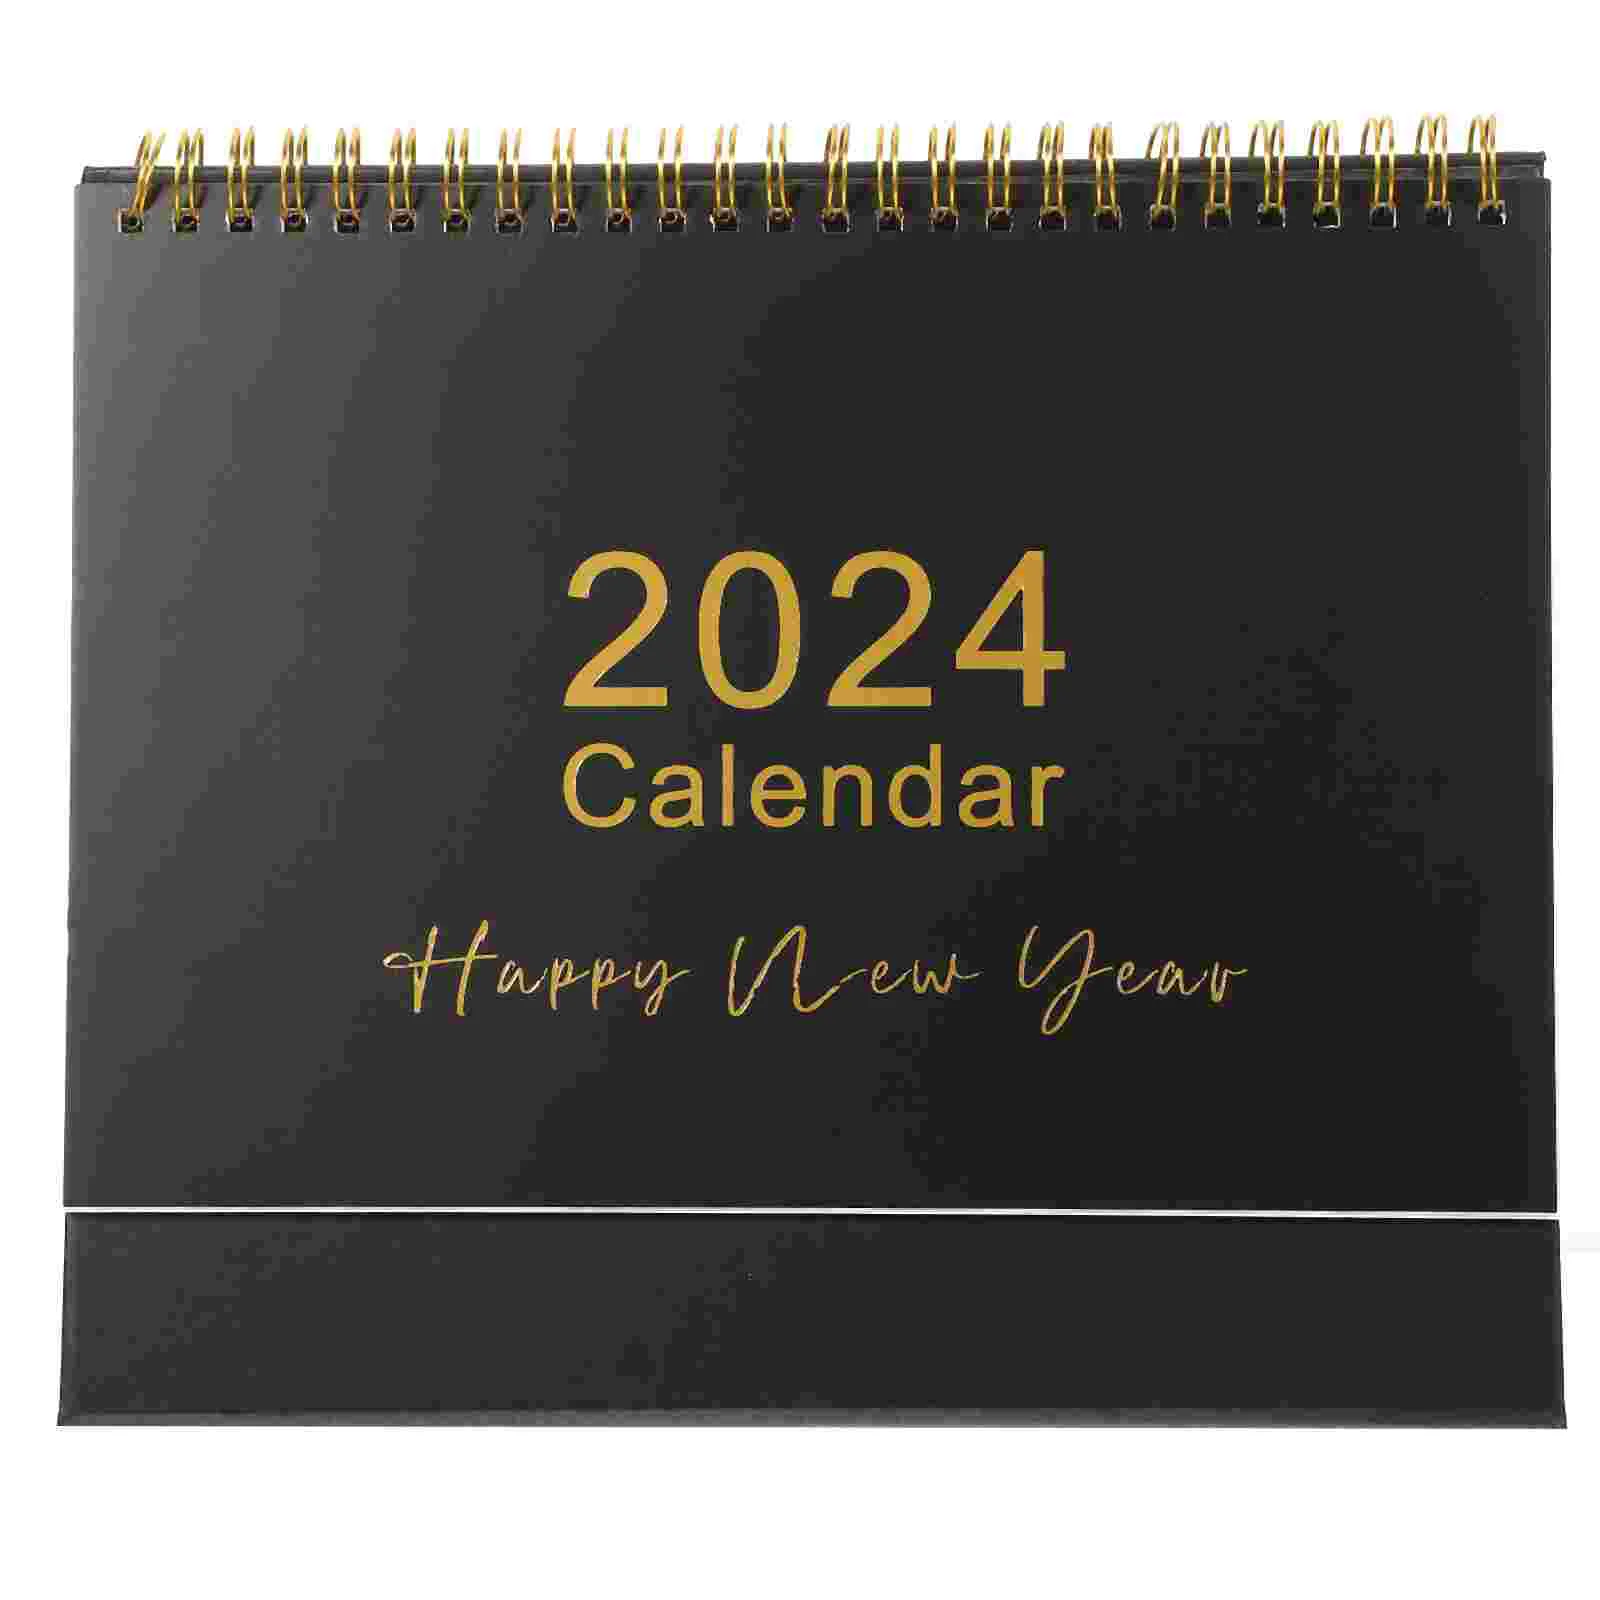 

Календарь на весь год, маленький настольный календарь 2024, стоячий календарь, стол календарь 2024 для записи событий